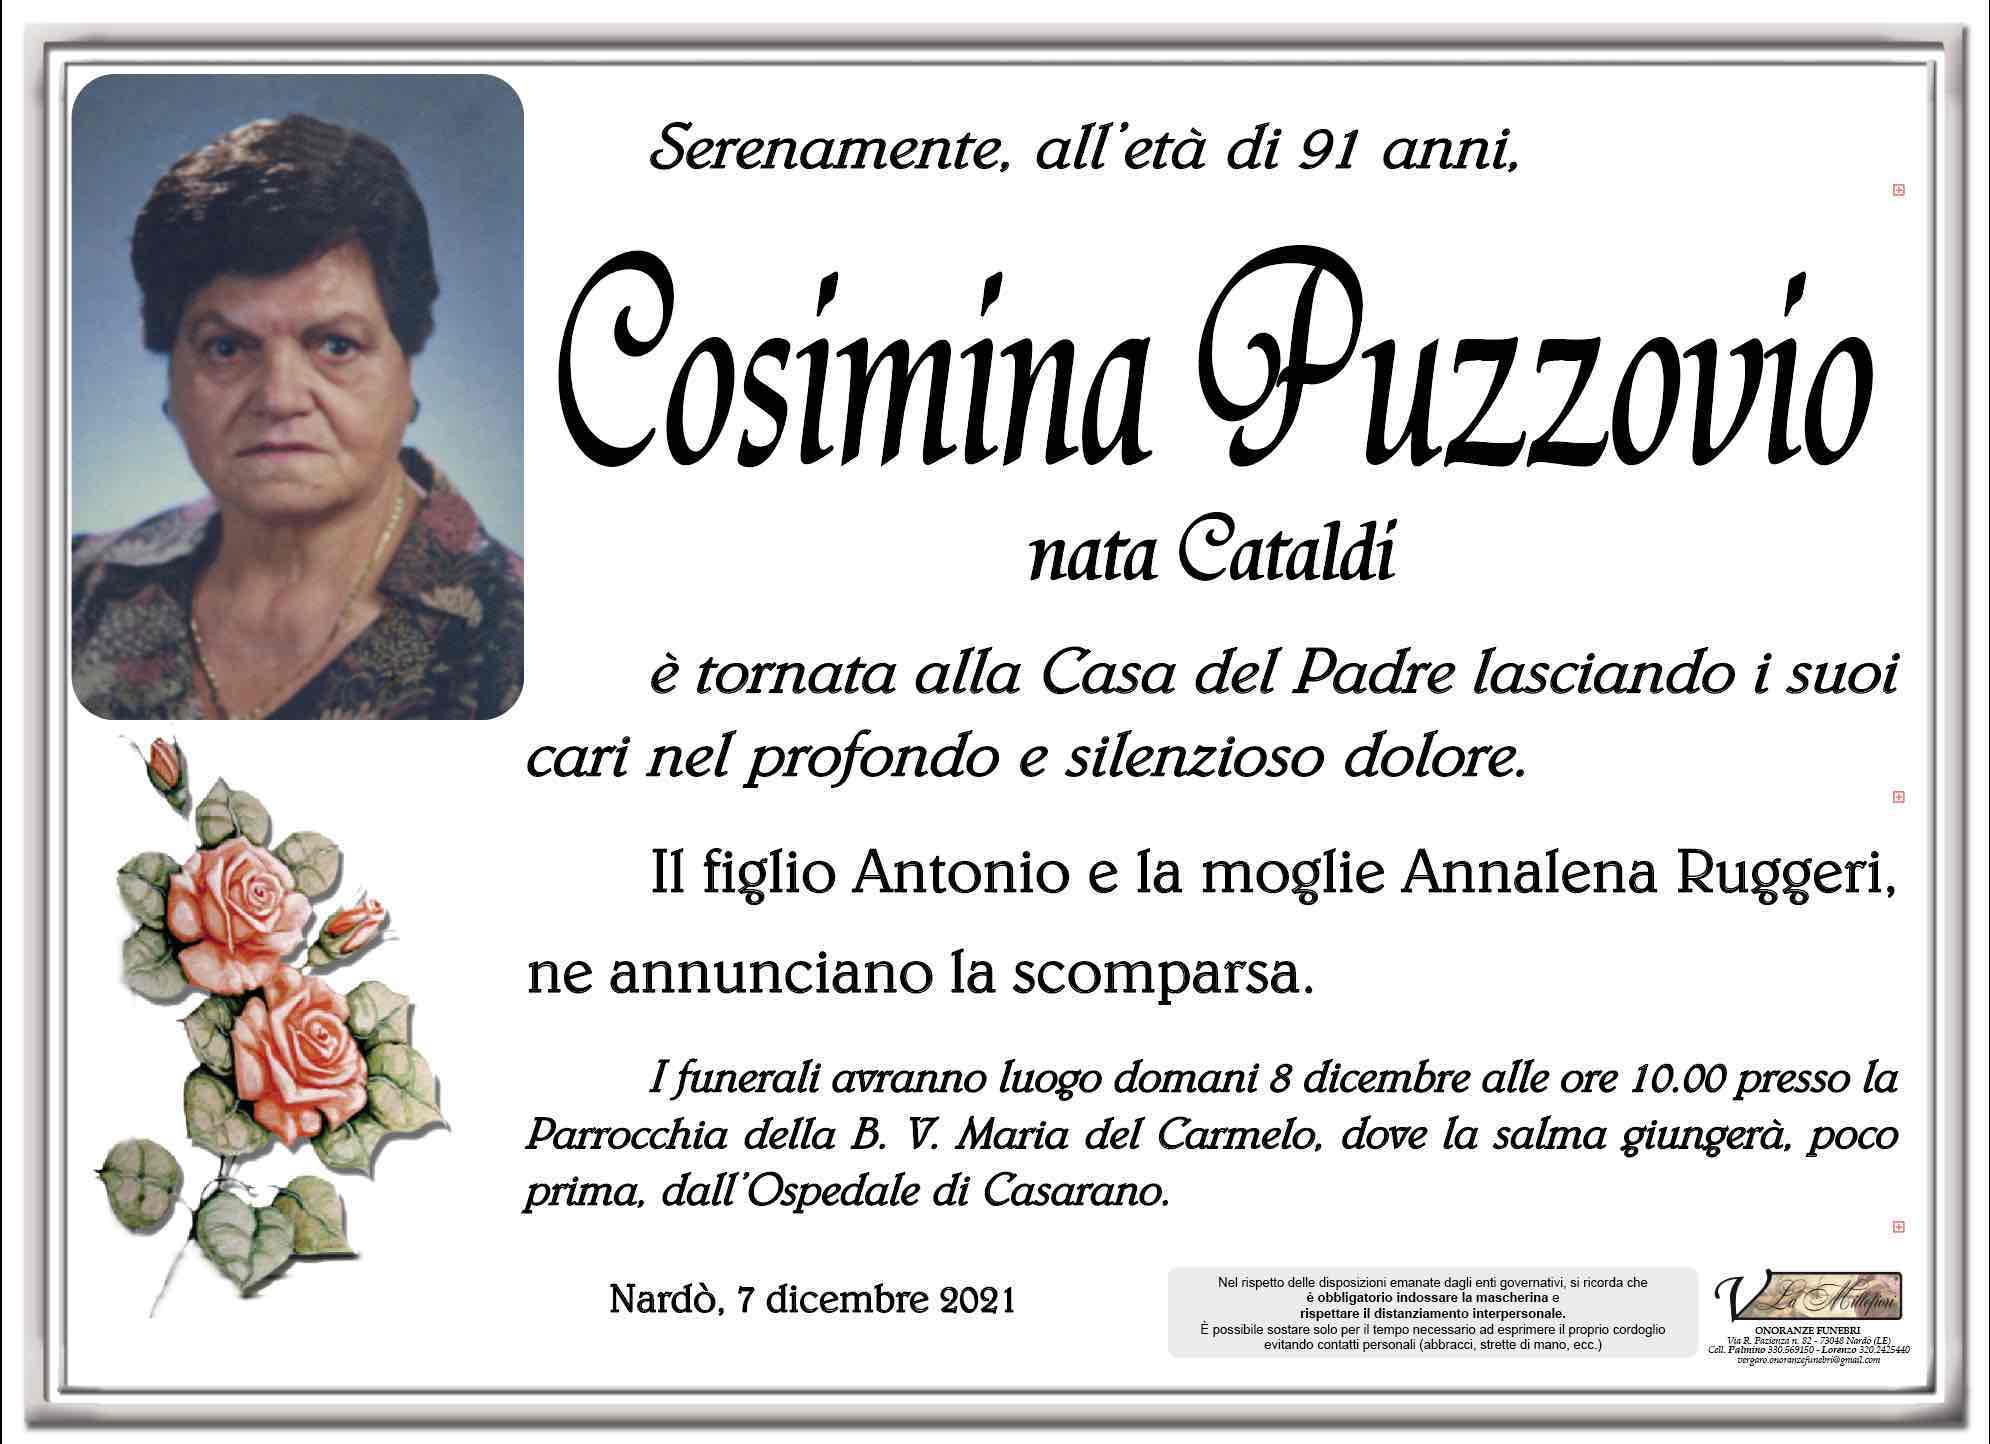 Cosima Puzzovio